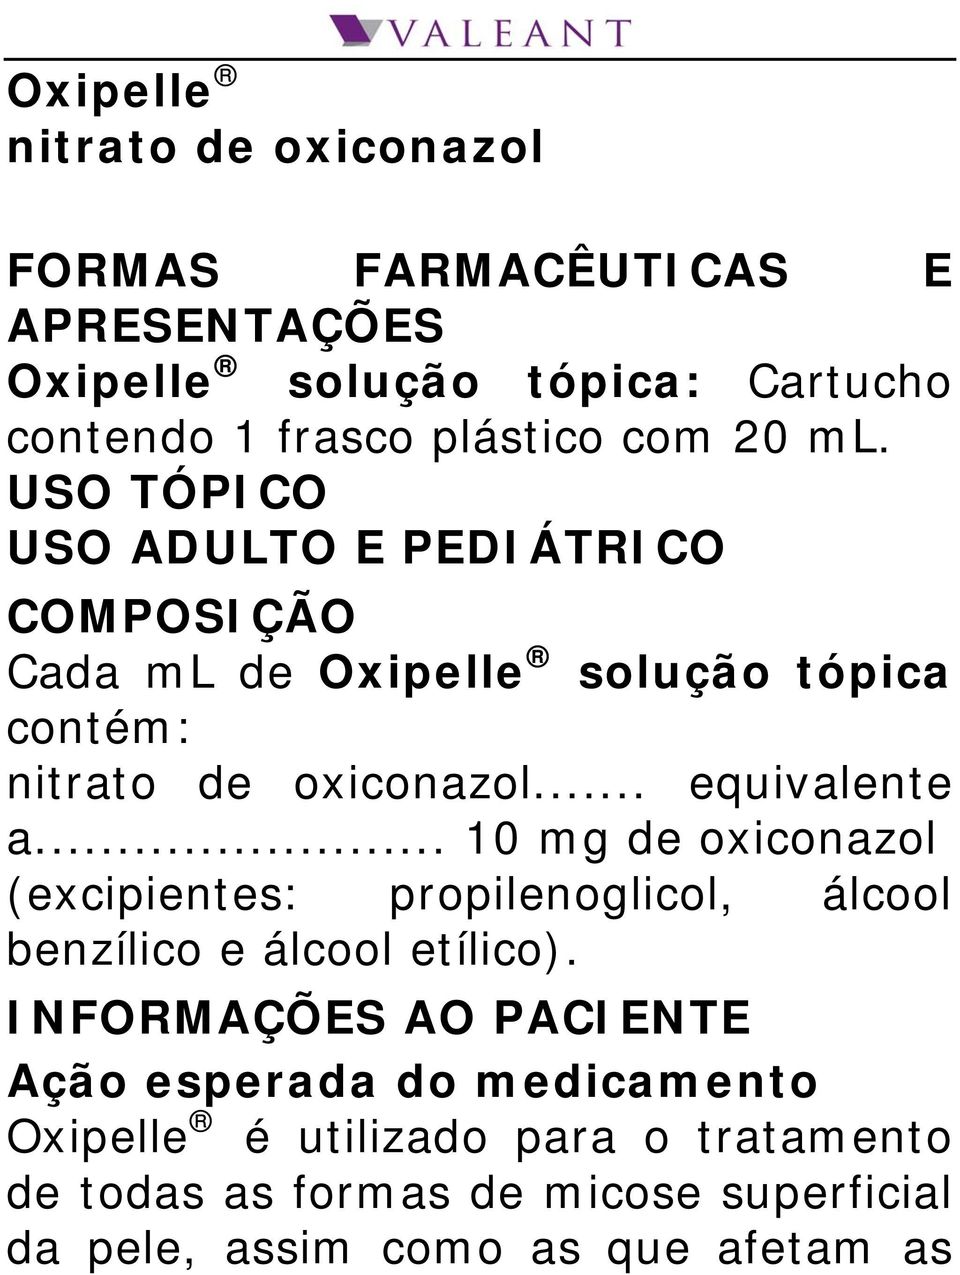 .. equivalente a... 10 mg de oxiconazol (excipientes: propilenoglicol, álcool benzílico e álcool etílico).